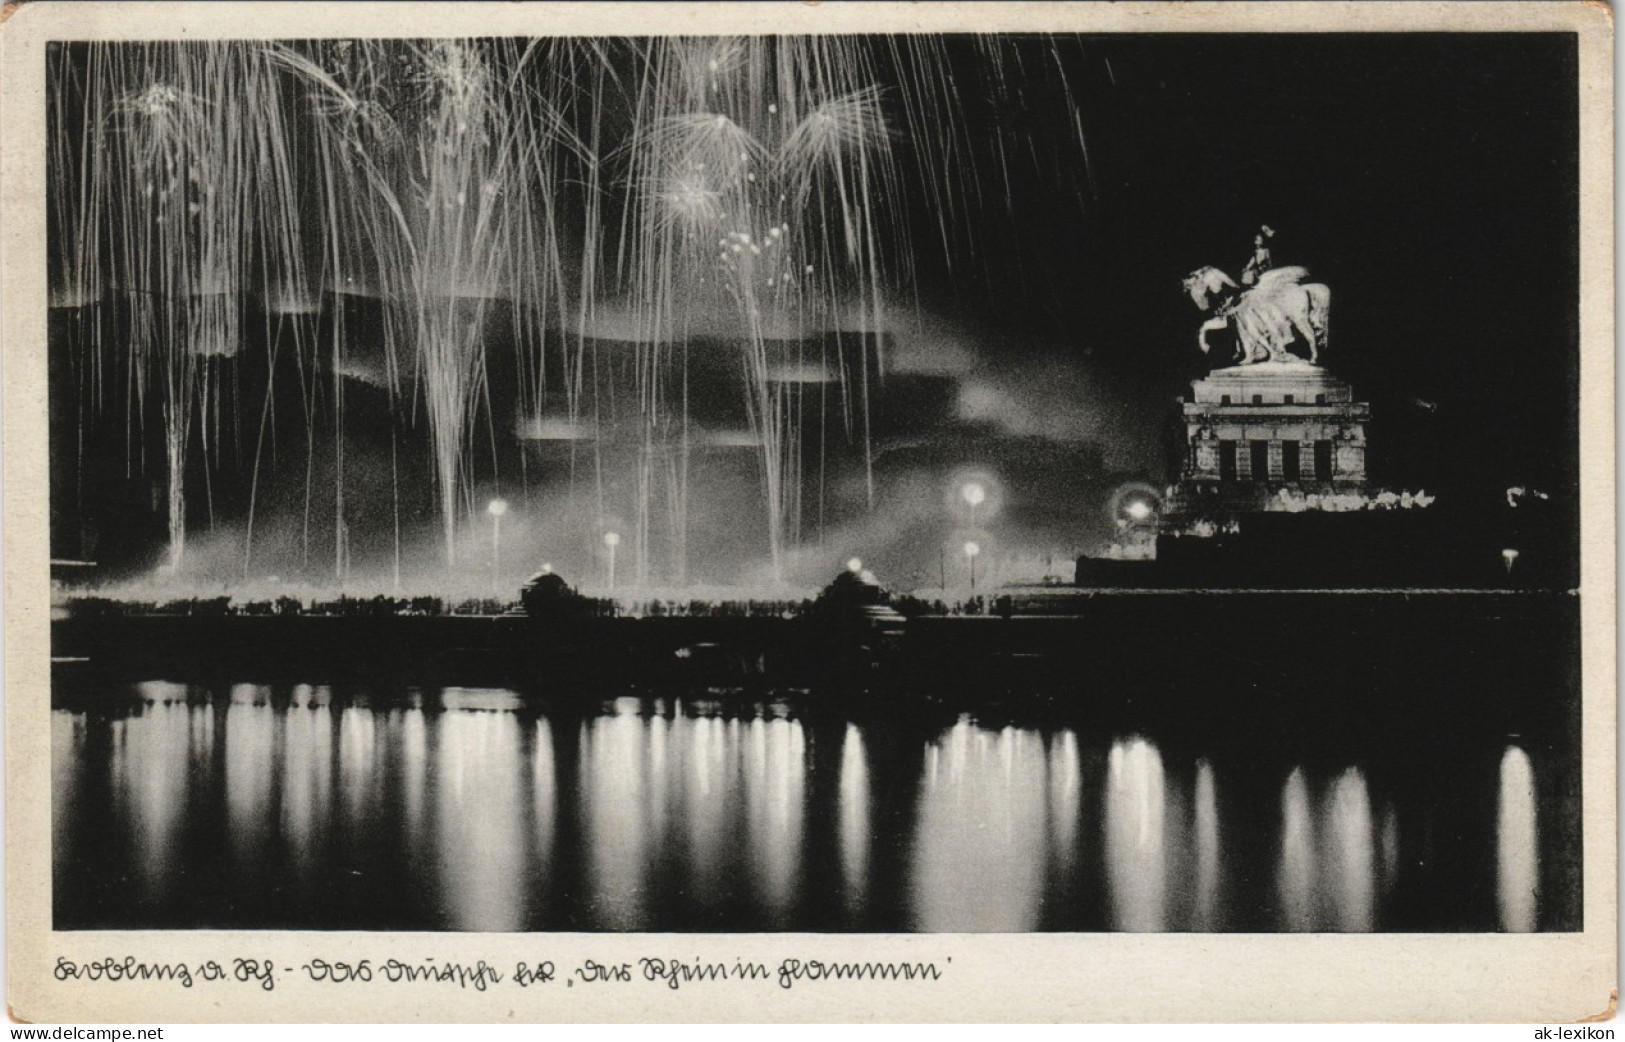 Ansichtskarte Koblenz Deutsches Eck, Beleuchtung, Leuchtspuren 1930 - Koblenz